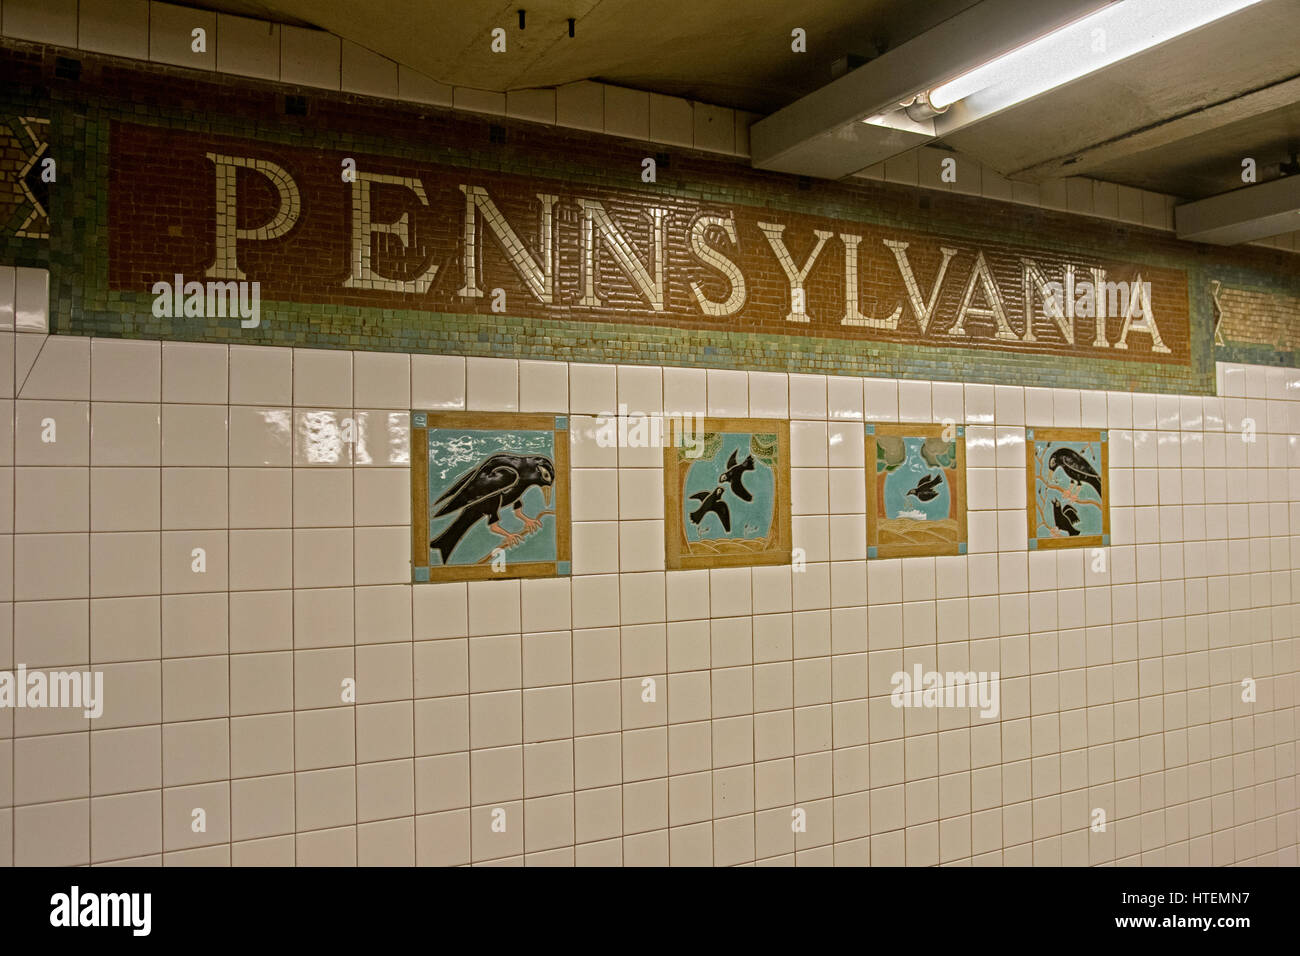 Bella arte della metropolitana presso la stazione di Penn 34th Street fermata della settima avenue linea in Manhattan, New York City. Foto Stock